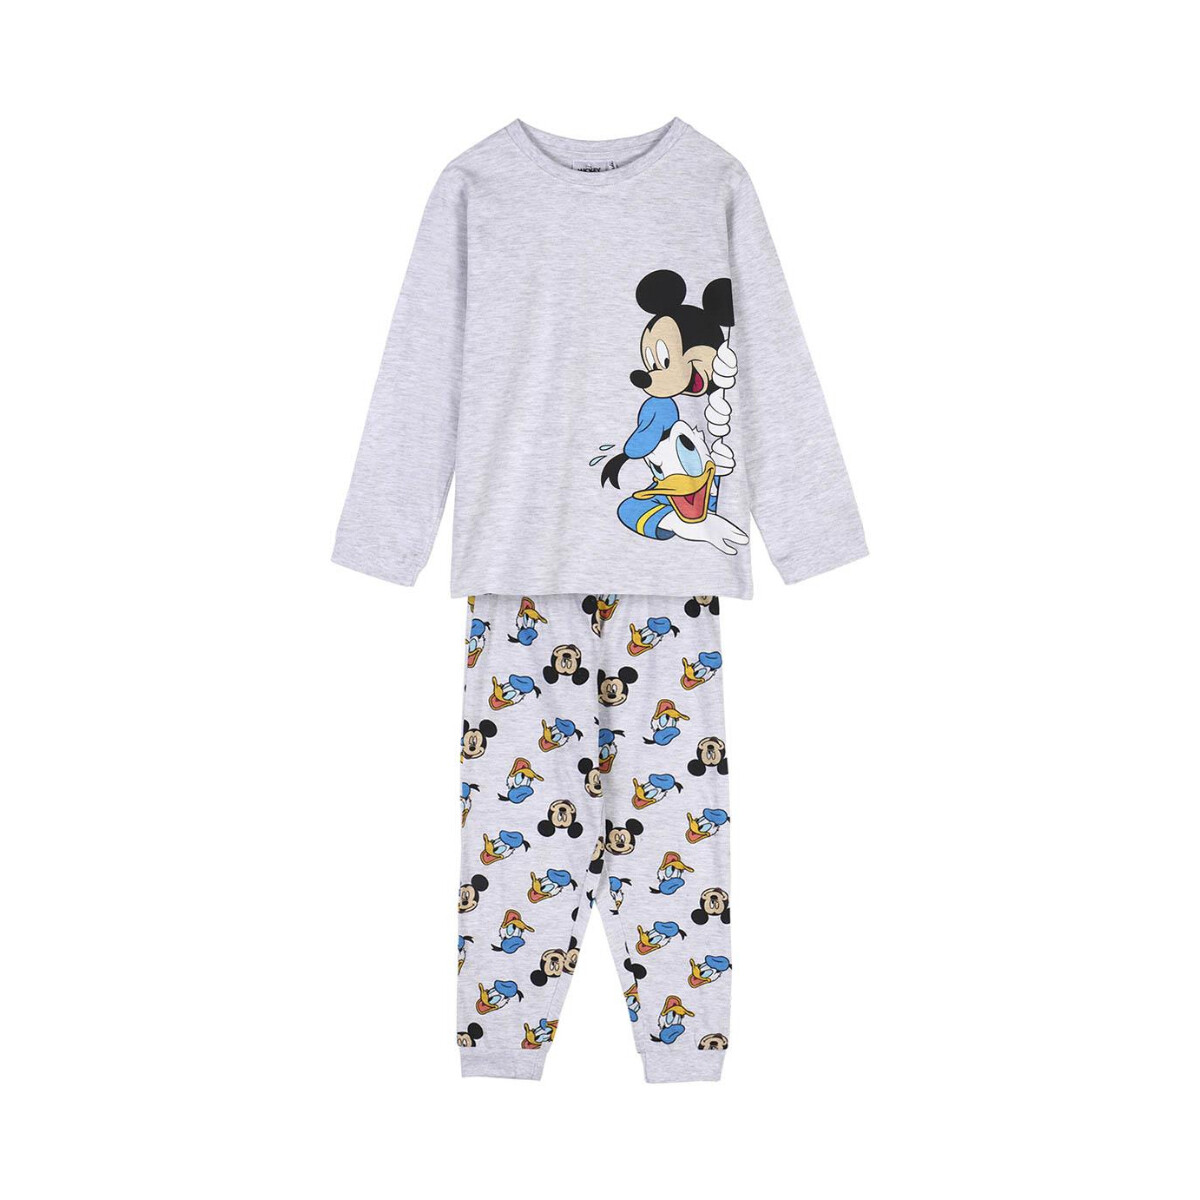 Textil Criança Pijamas / Camisas de dormir Disney 2900000107 Cinza